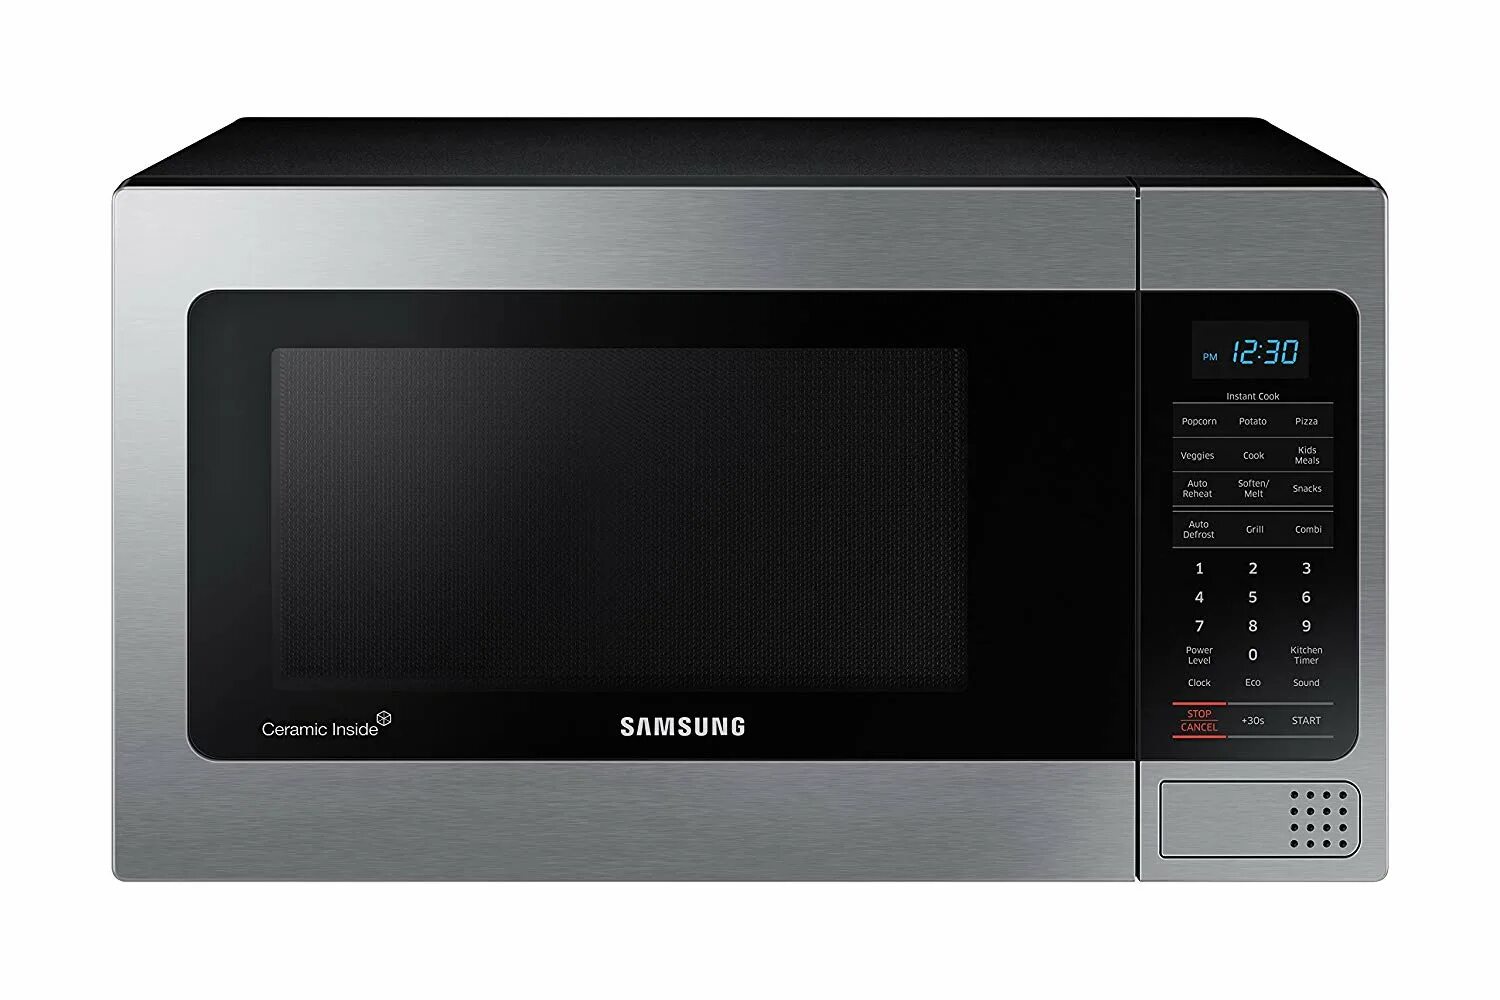 Samsung 1.1 cu ft Countertop Microwave Oven w/. Микроволновая печь Samsung Соло mg25. Samsung Ceramic inside микроволновка. Микроволновая печь Samsung ms23f301tqr.